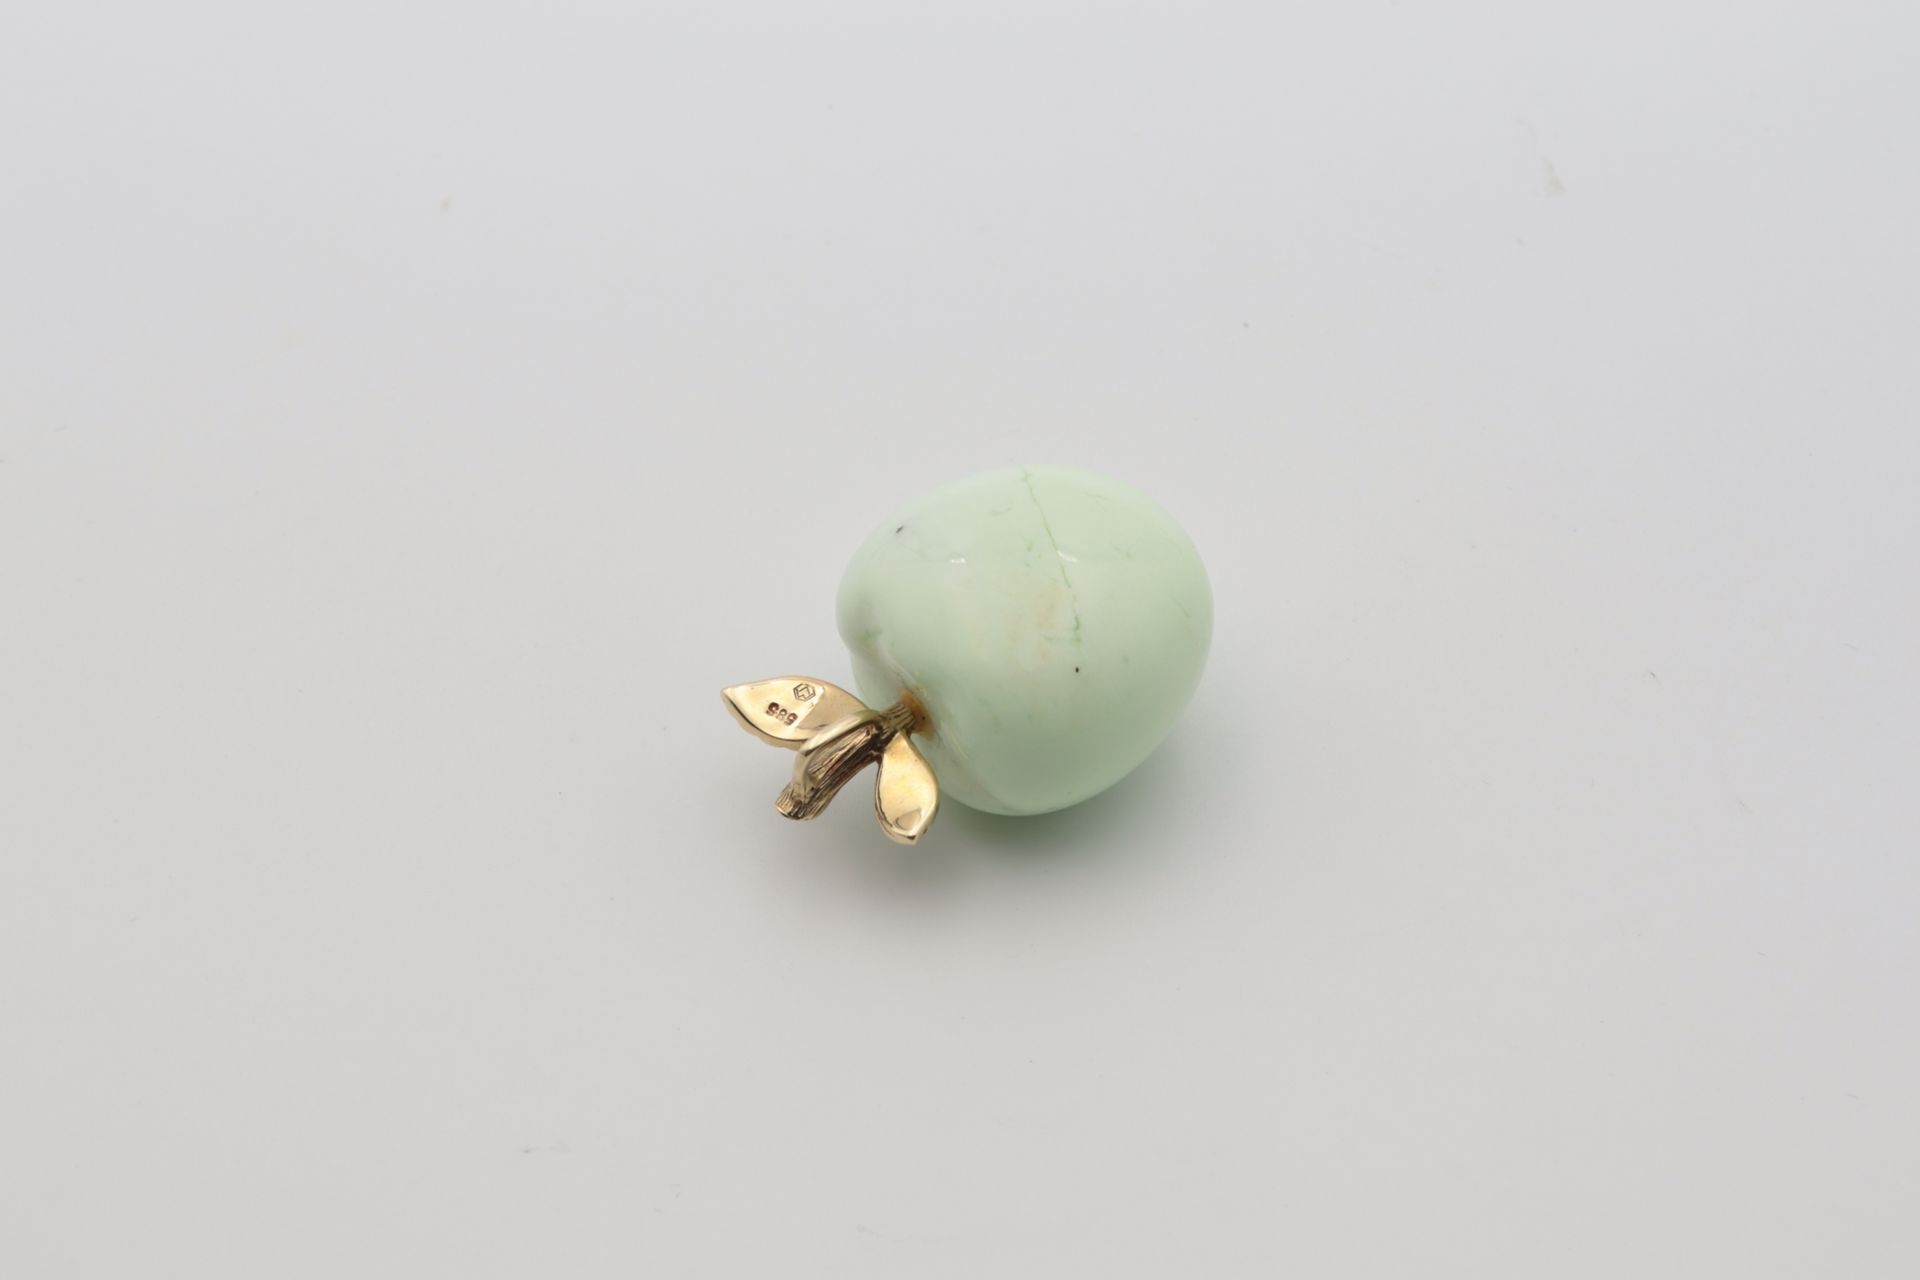 Anhänger - Jaspis fein ausgearbeiteter Apfel, aus mintgrünem Jaspis, mit blattförmi - Image 4 of 4